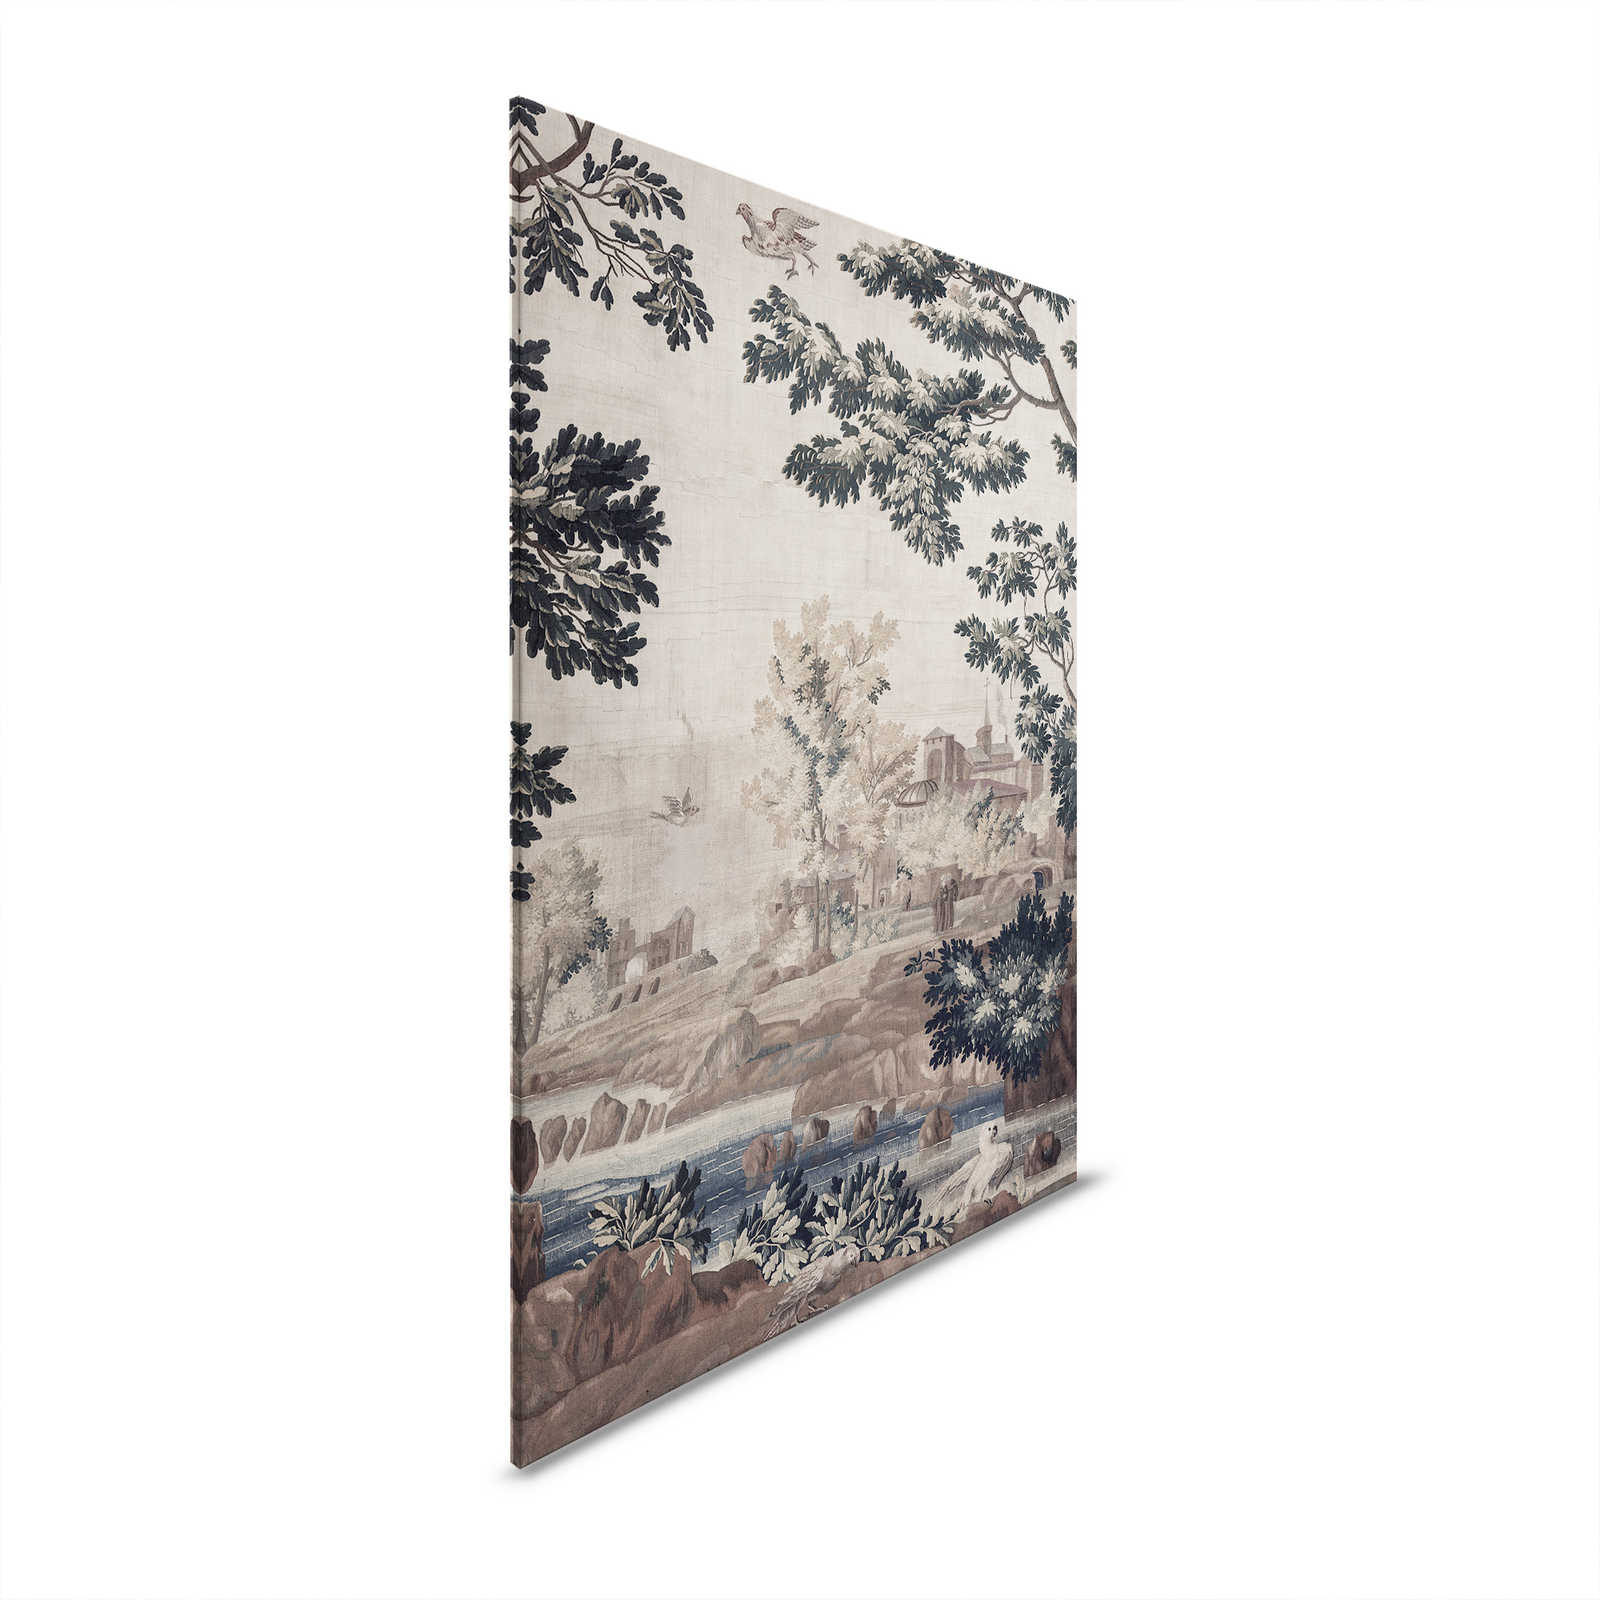 Gobelin Gallery 1 - Paysage toile tapisserie historique - 1,20 m x 0,80 m
